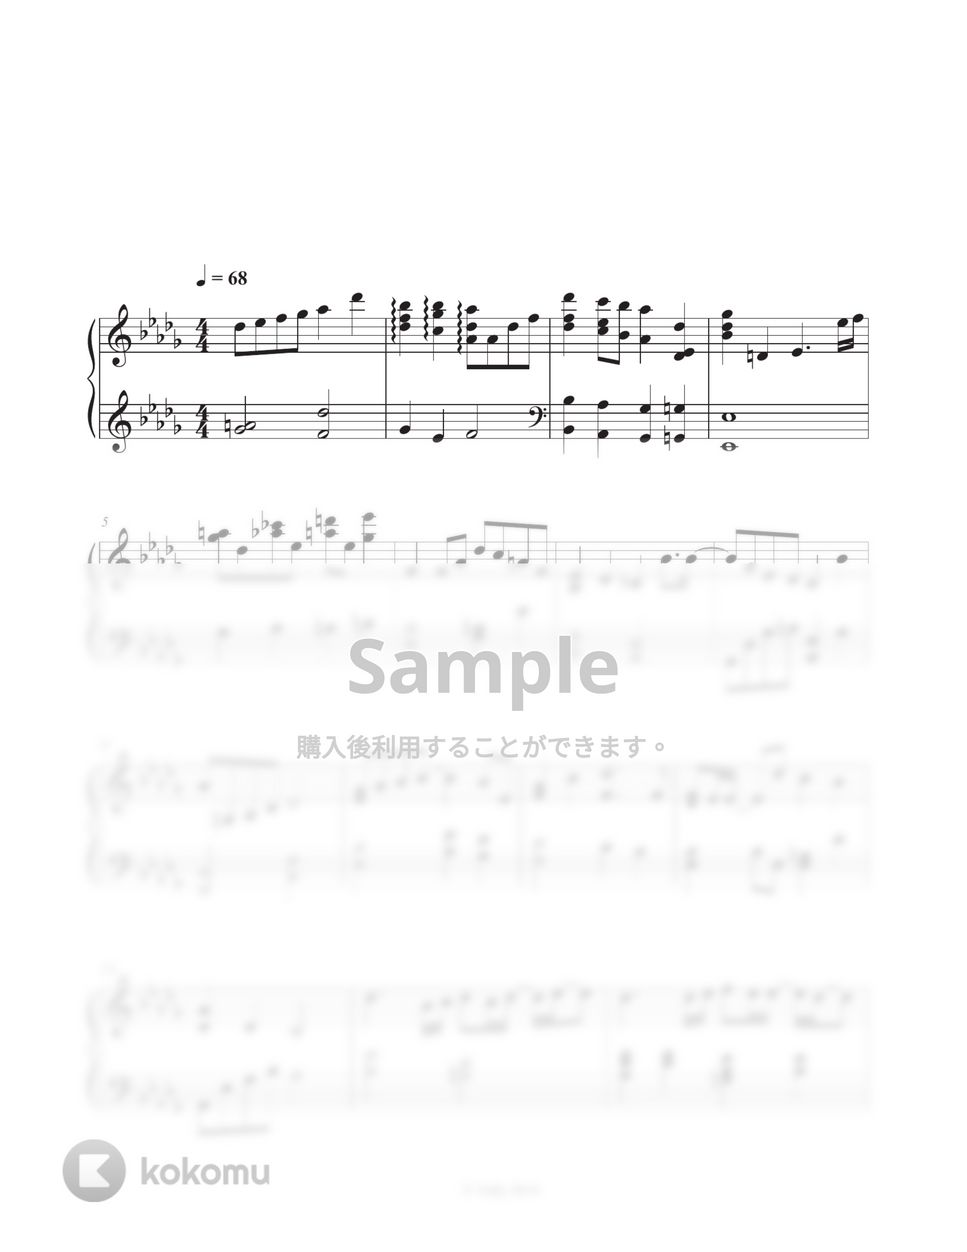 チョン・スンファン - My christmas wish by Tully Piano